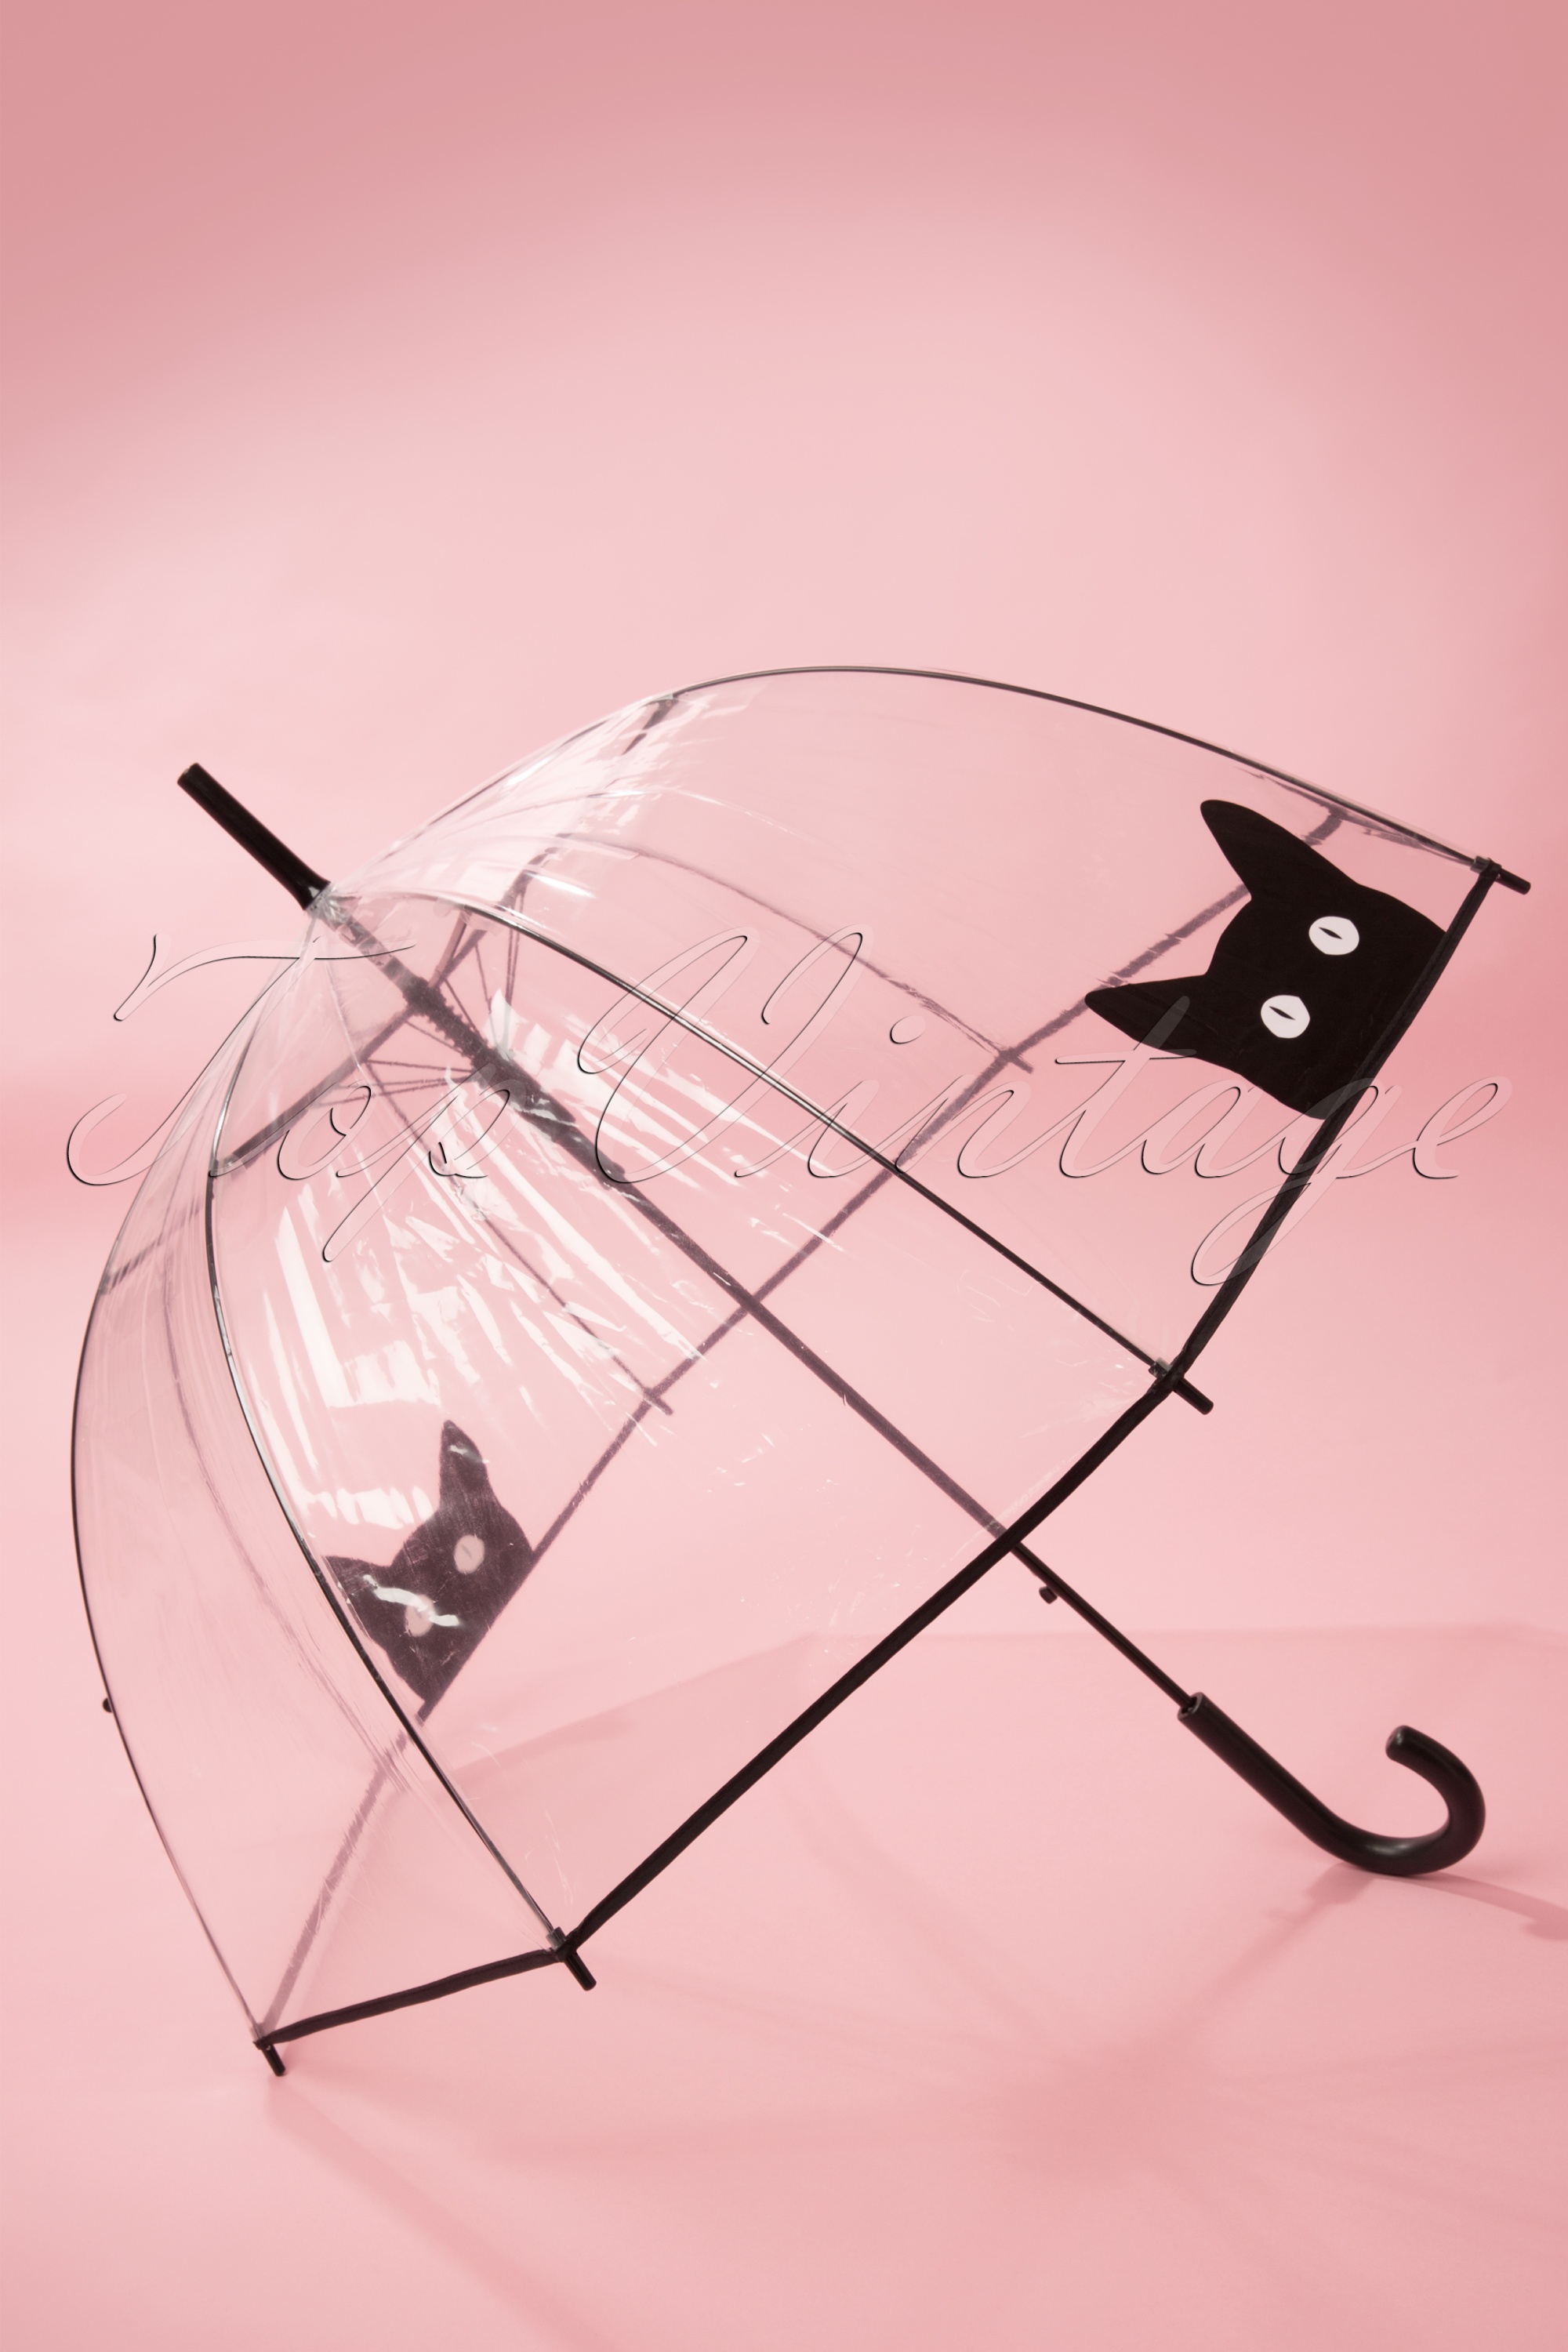 So Rainy - It's Raining Cats transparante koepelparaplu